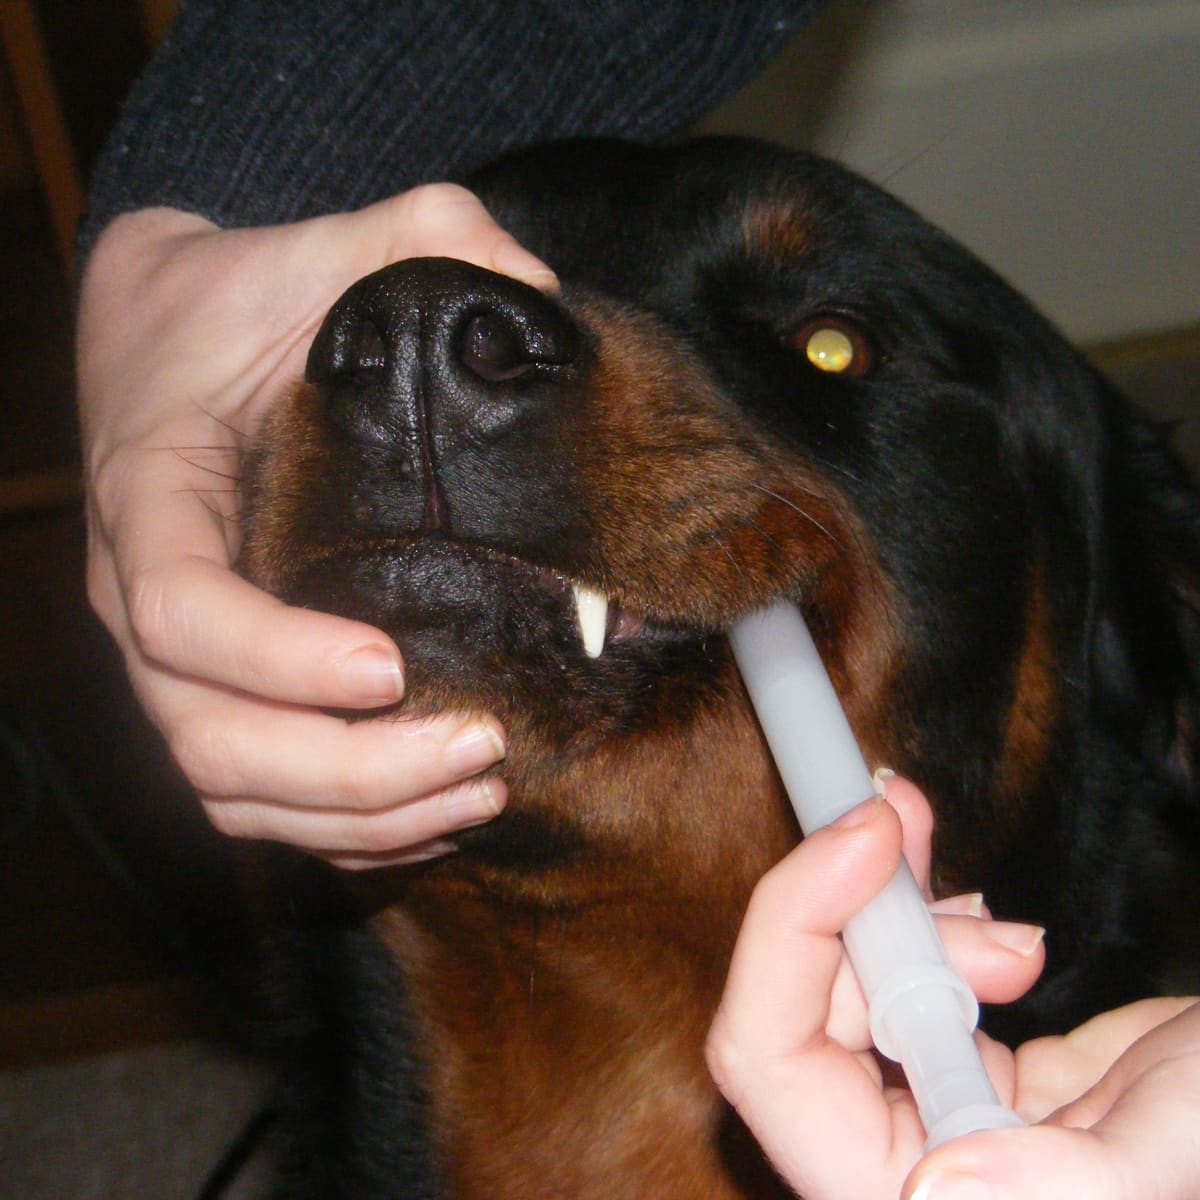 Поить форум. Как дать таблетку собаке. Жидкое лекарство для собак. Введения лекарств собака. Введение лекарства через рот животному.